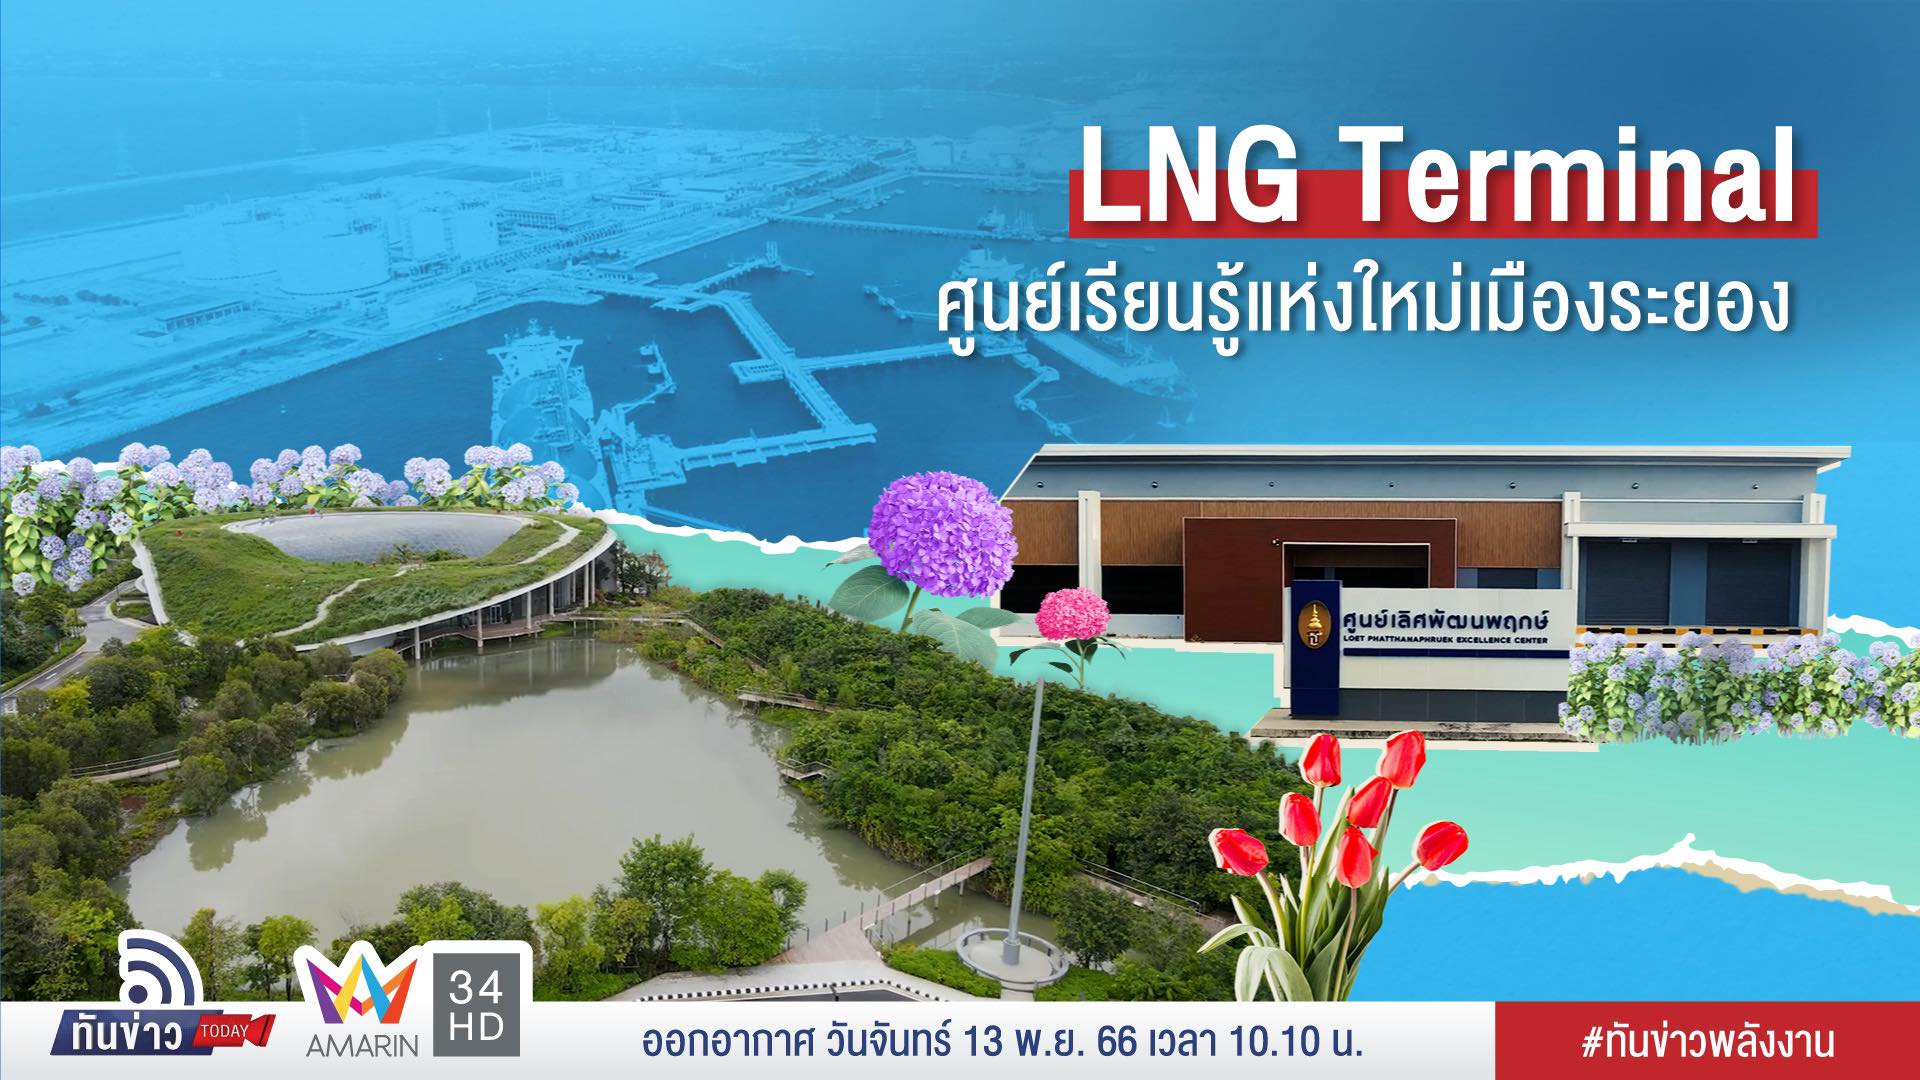 LNG Terminal ศูนย์เรียนรู้แห่งใหม่เมืองระยอง